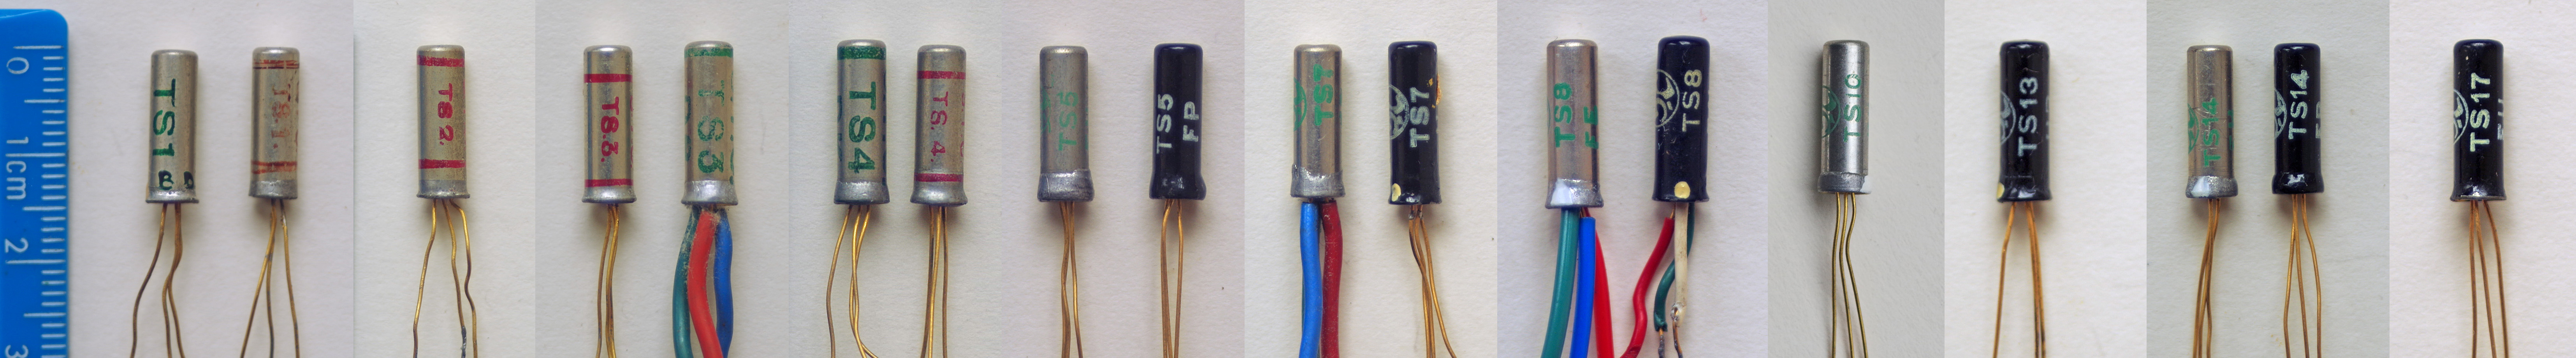 TS1 transistor